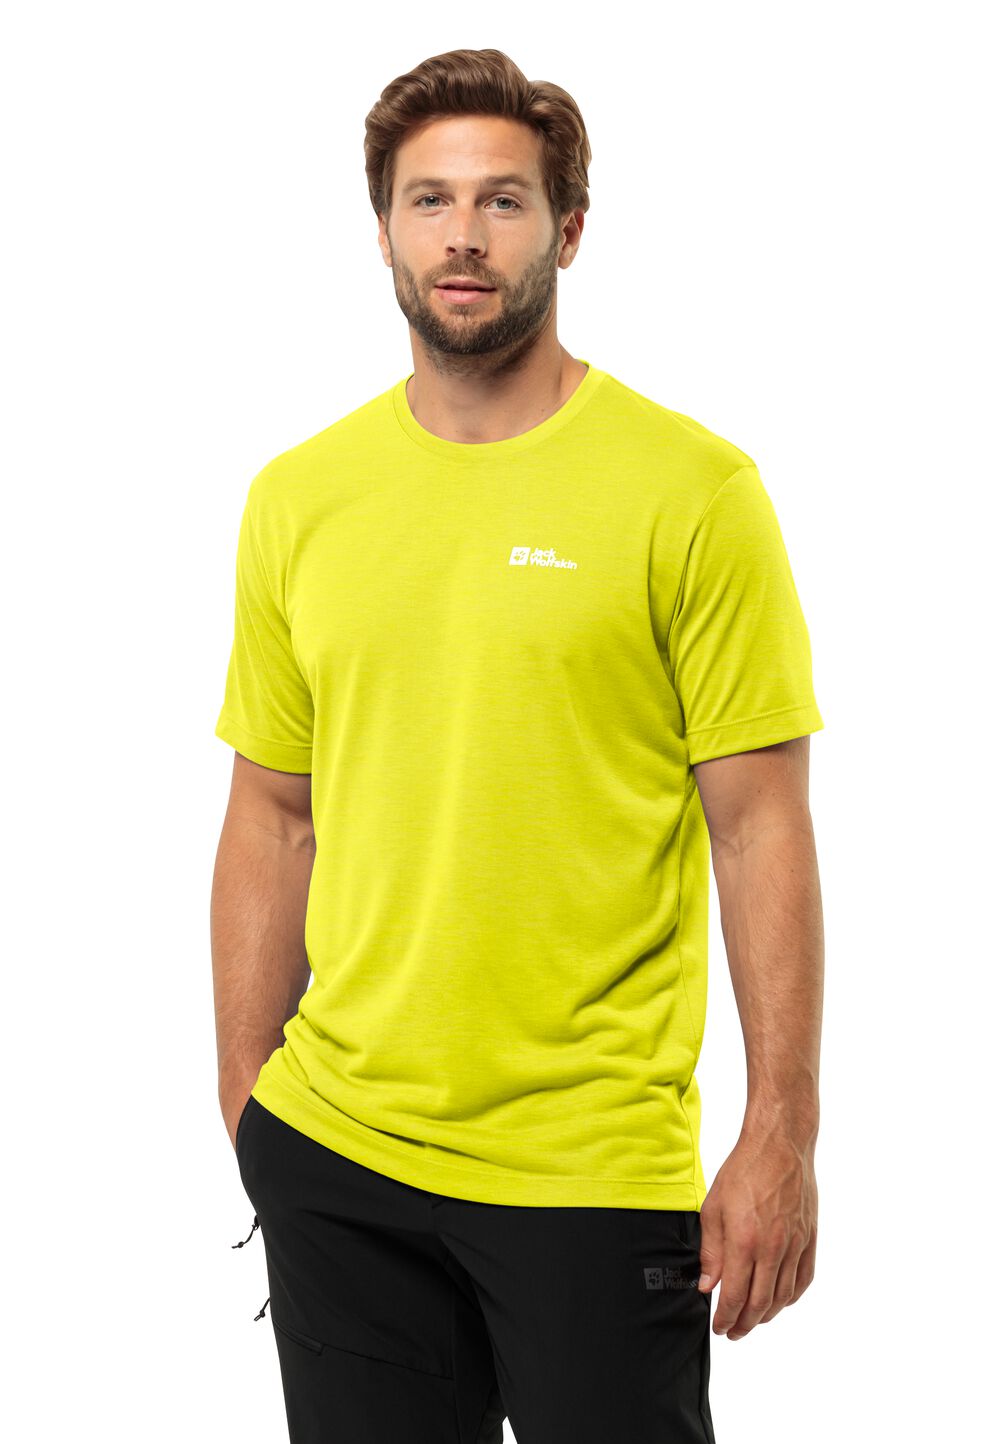 Jack Wolfskin Vonnan S S T-Shirt Men Functioneel shirt Heren L oranje firefly